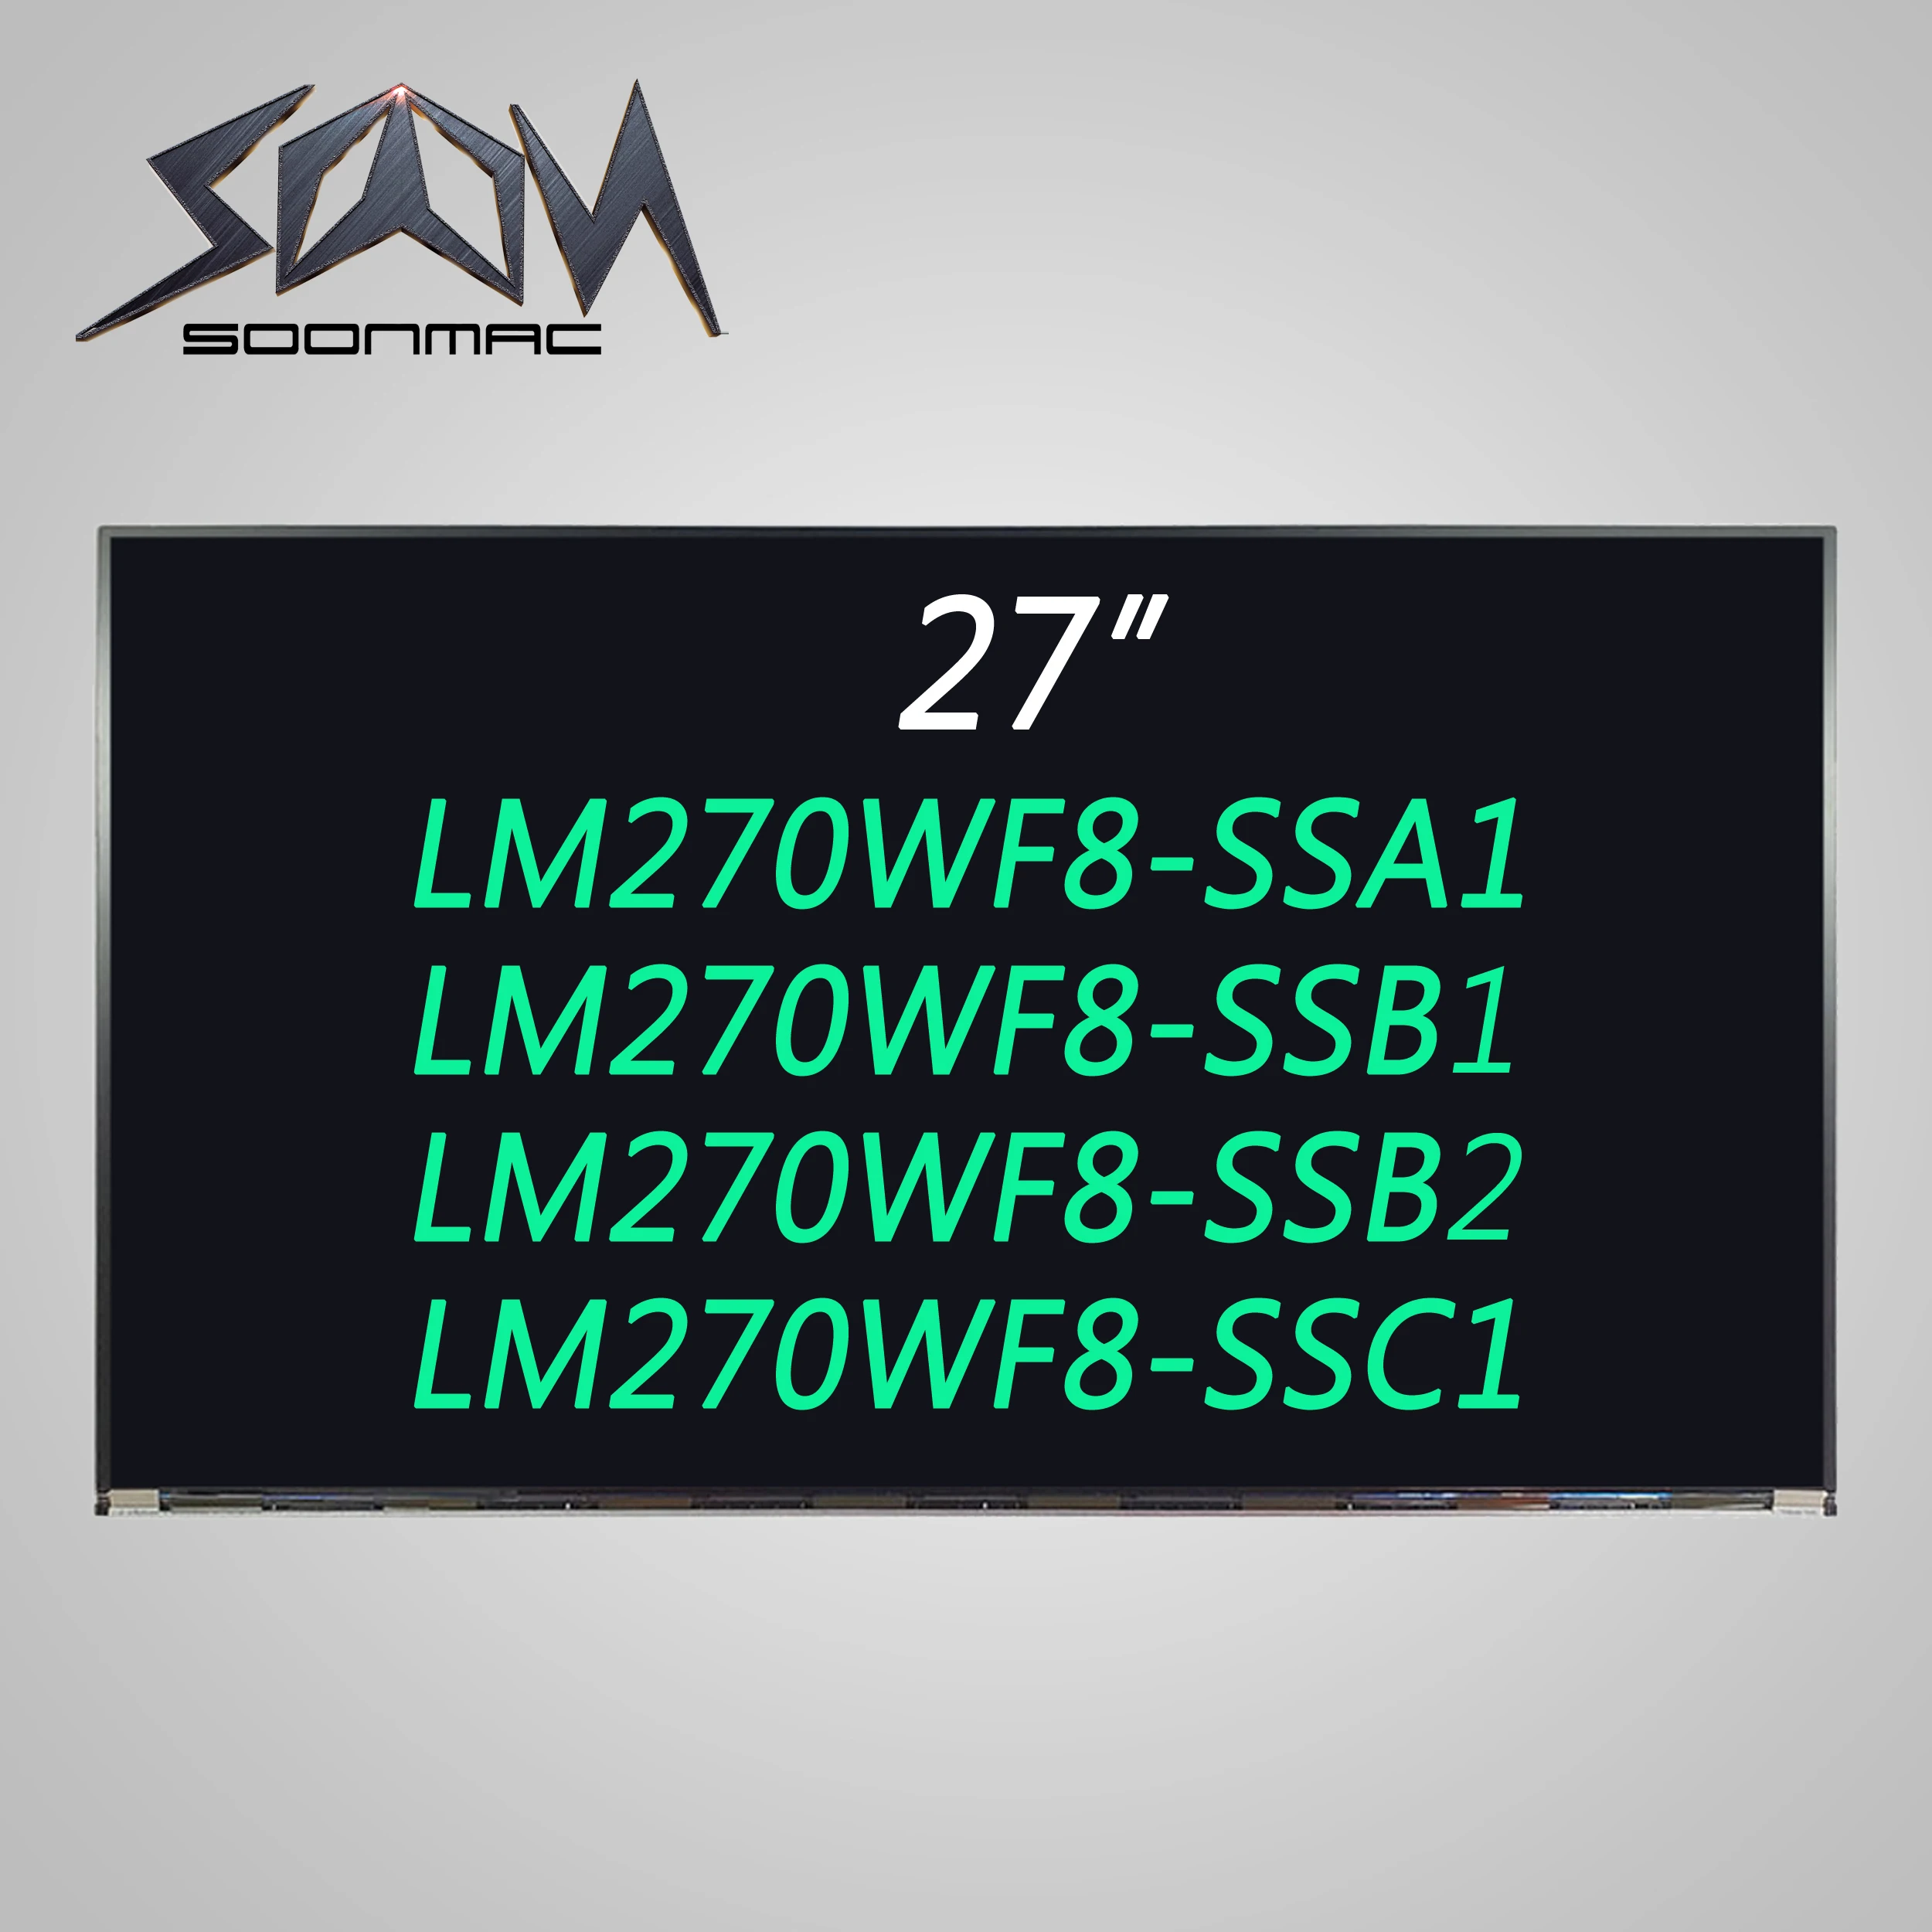 

Original 27 Inches LCD Screen LM270WF8 SSA1 SSB1 SSB2 SSC1 LM270WF8 SS A1 B1 B2 C1 LCD Display